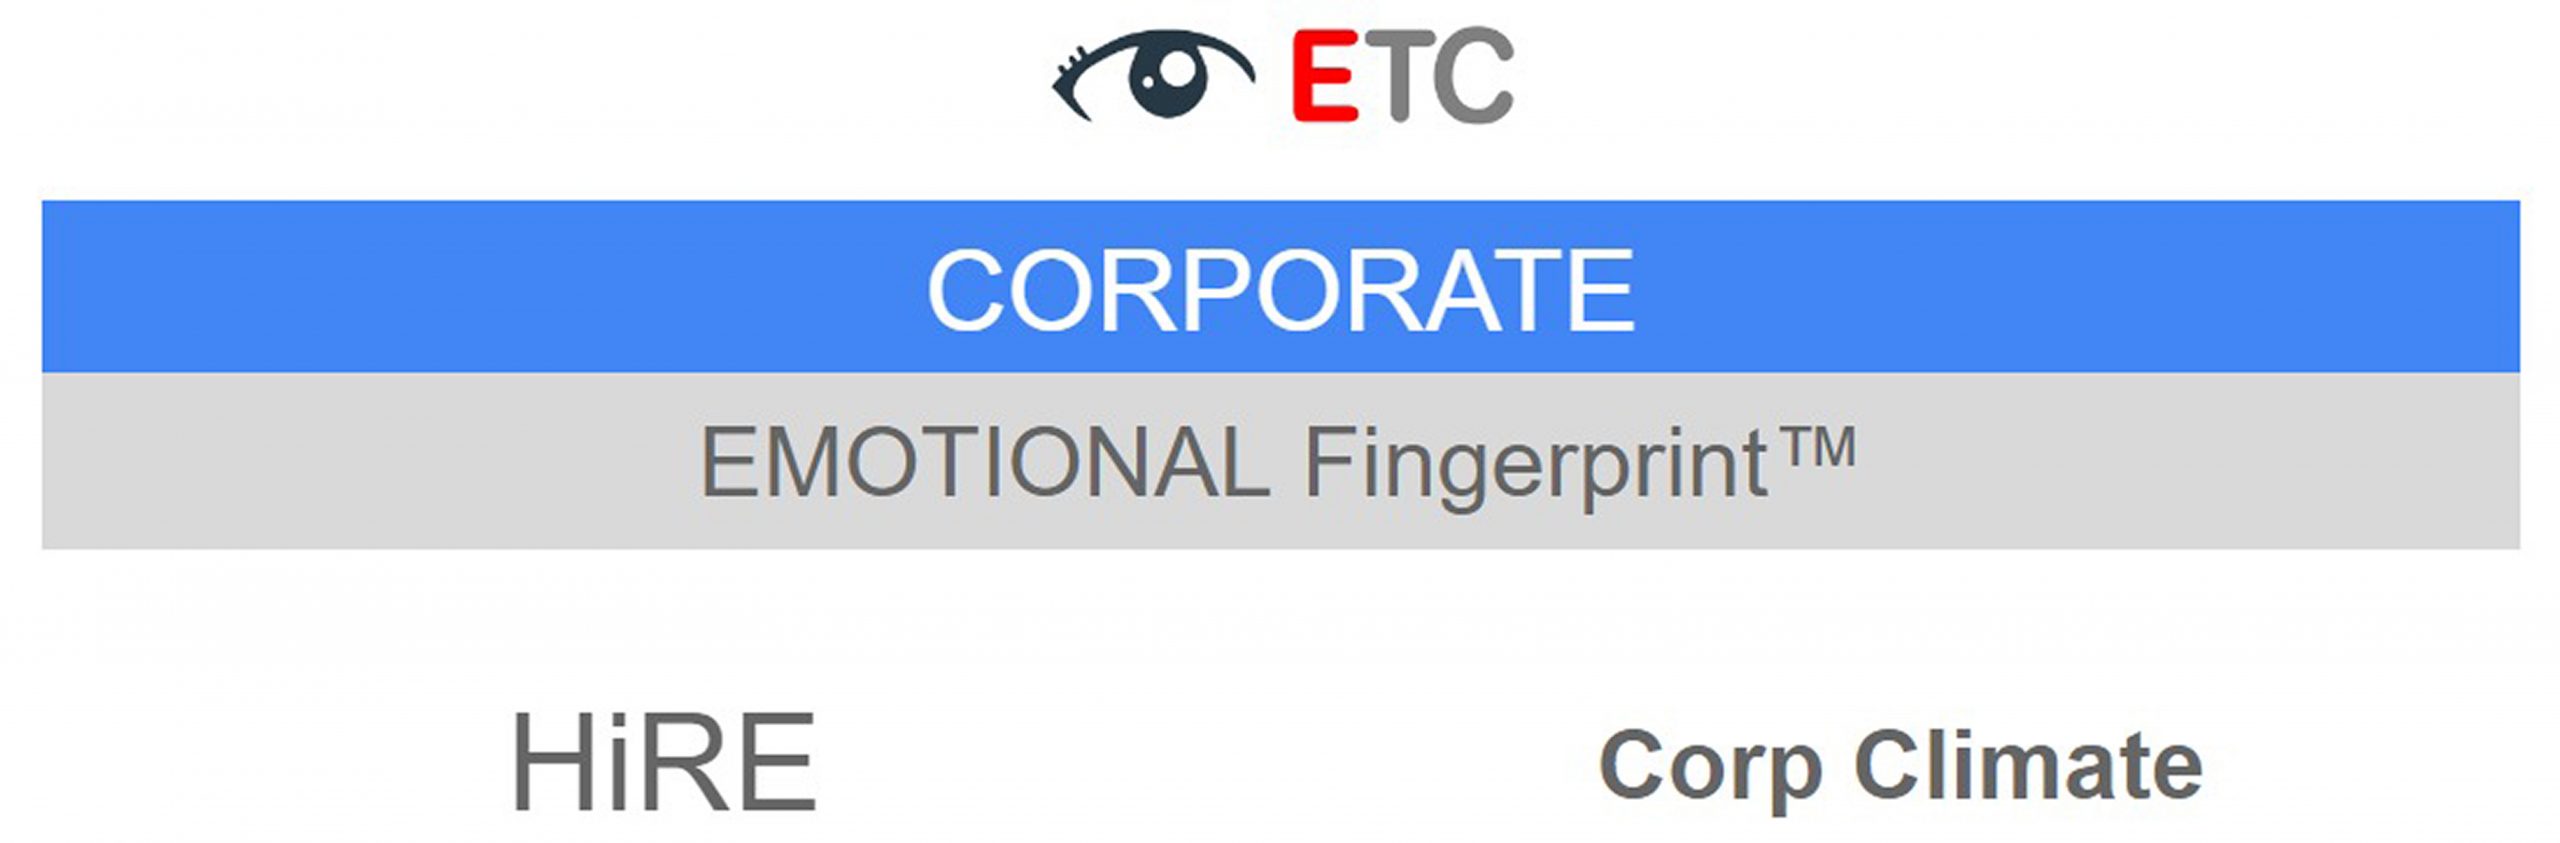 ETC Corporate Solutions